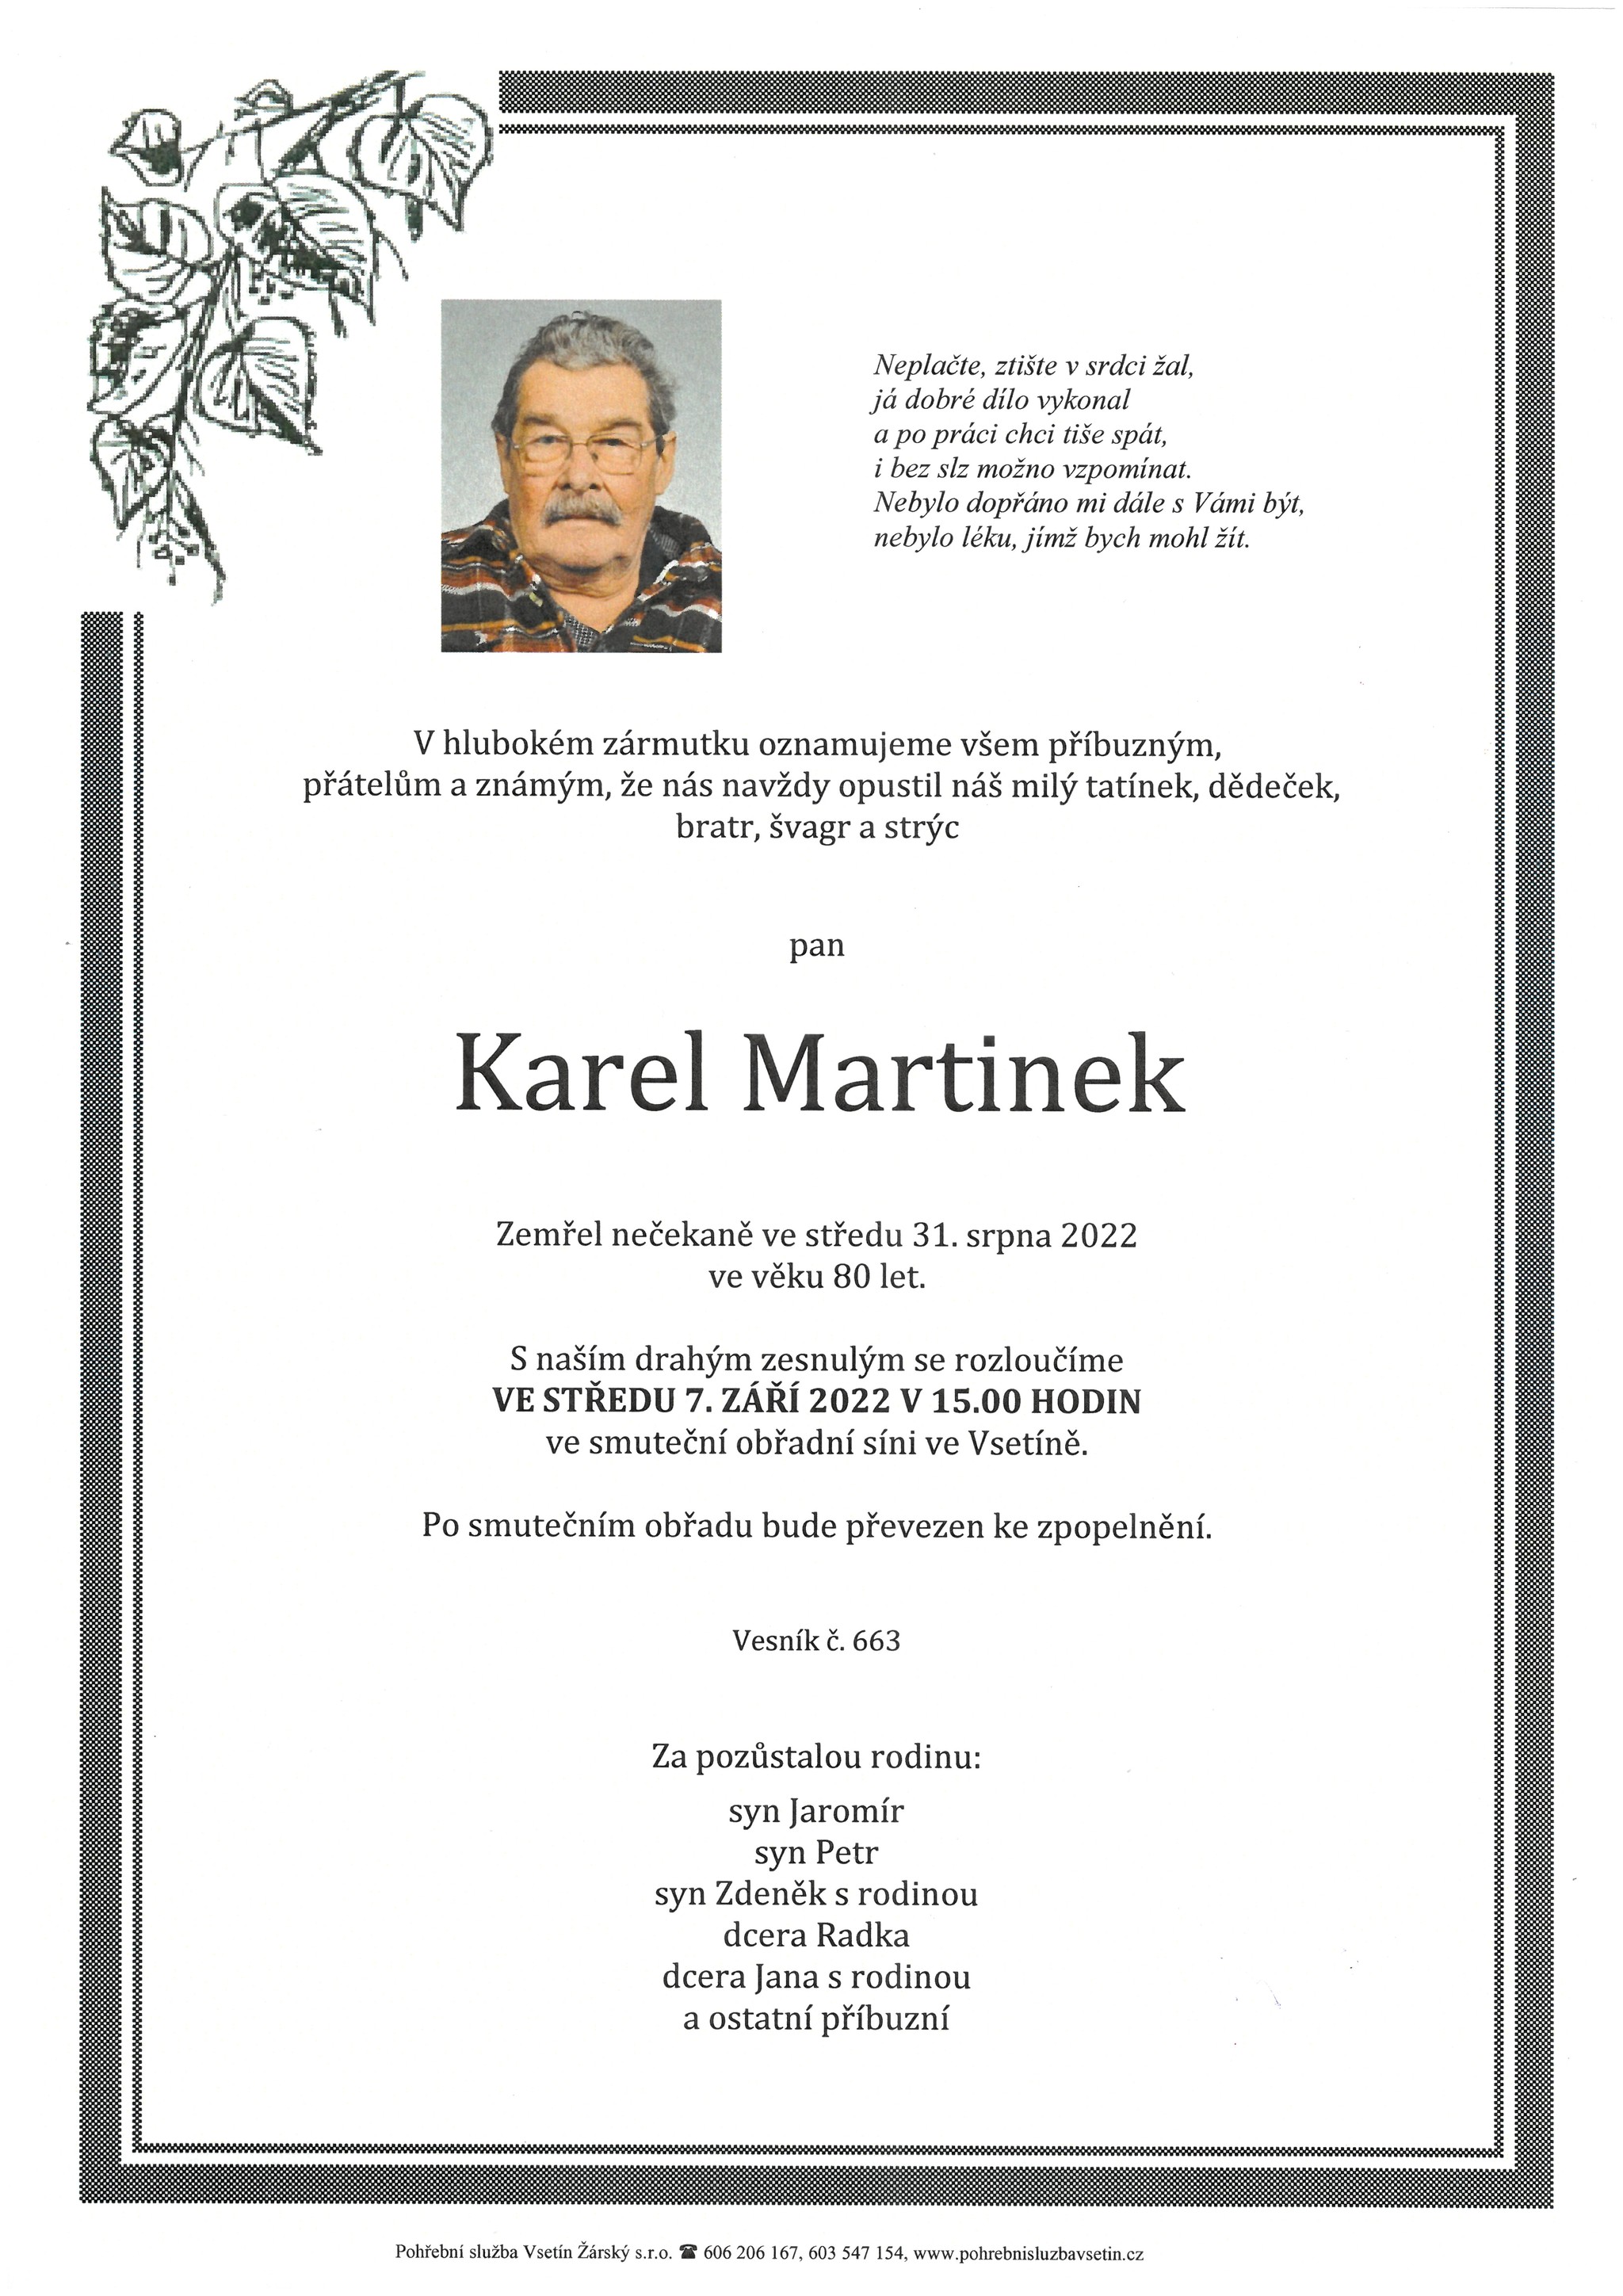 Karel Martinek